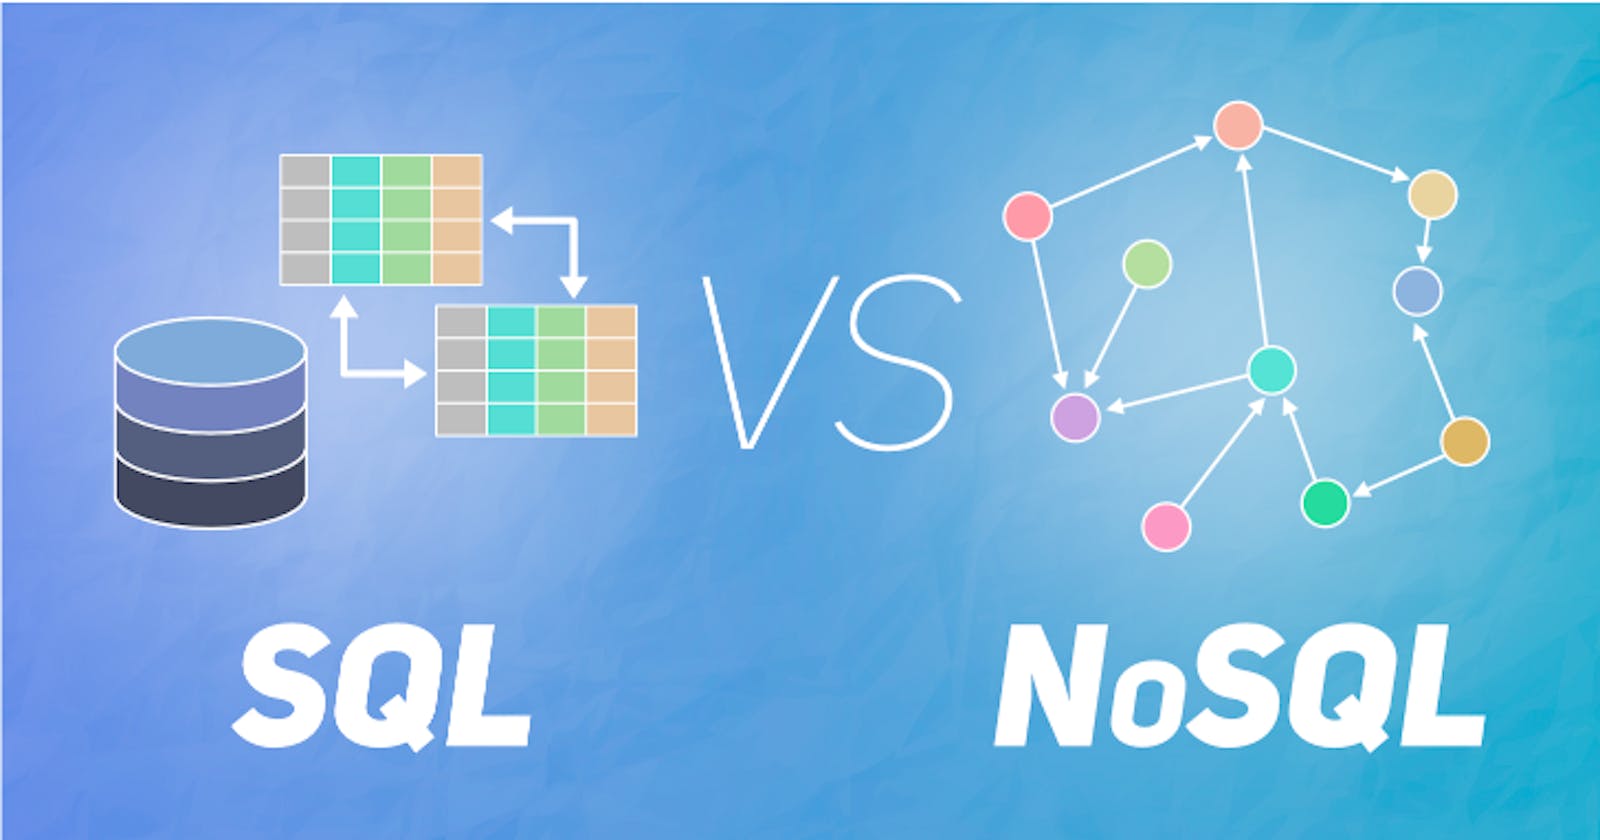 SQL or NoSQL?